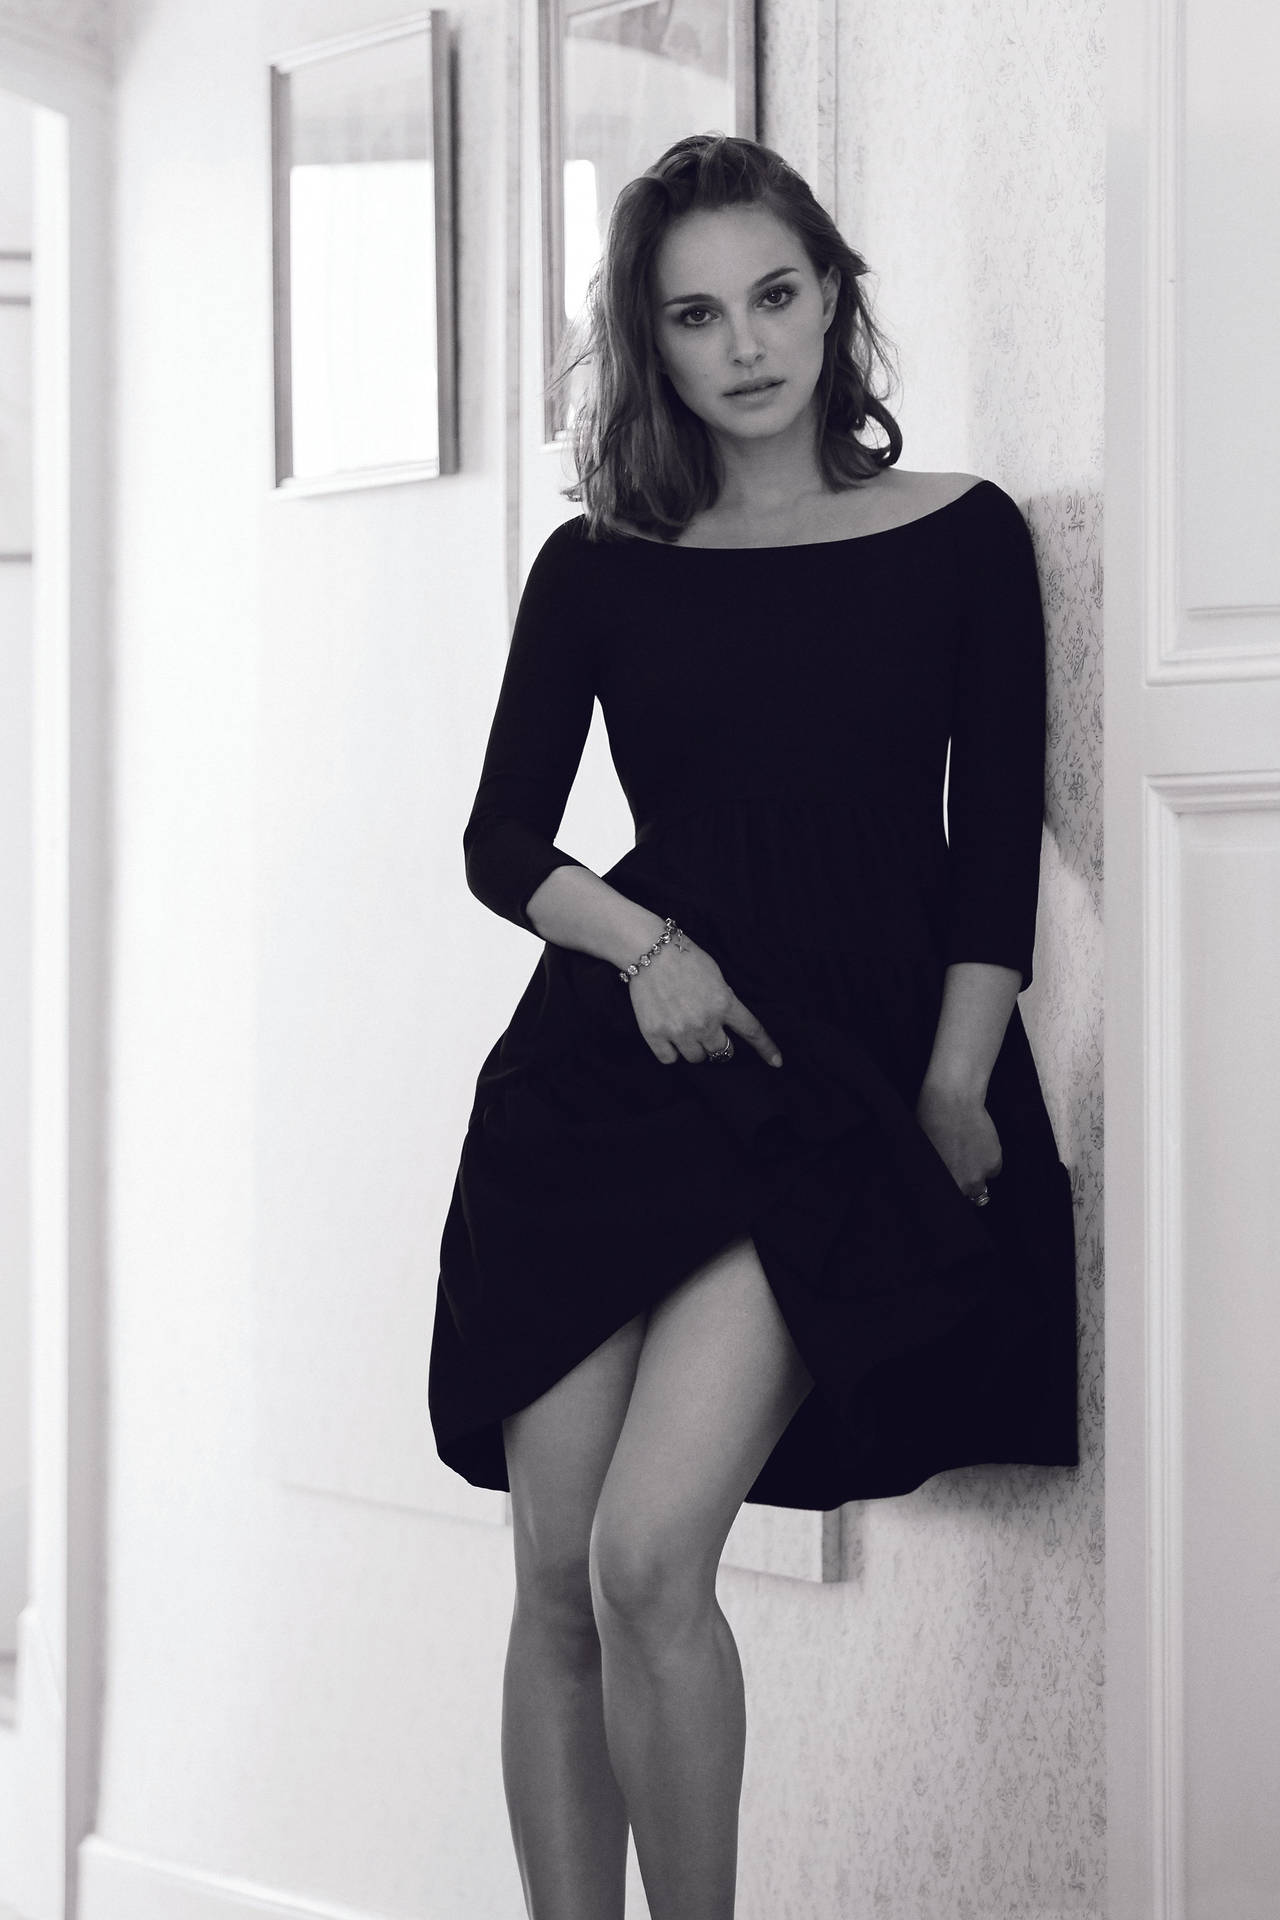 Smashing Image Of Natalie Portman Background